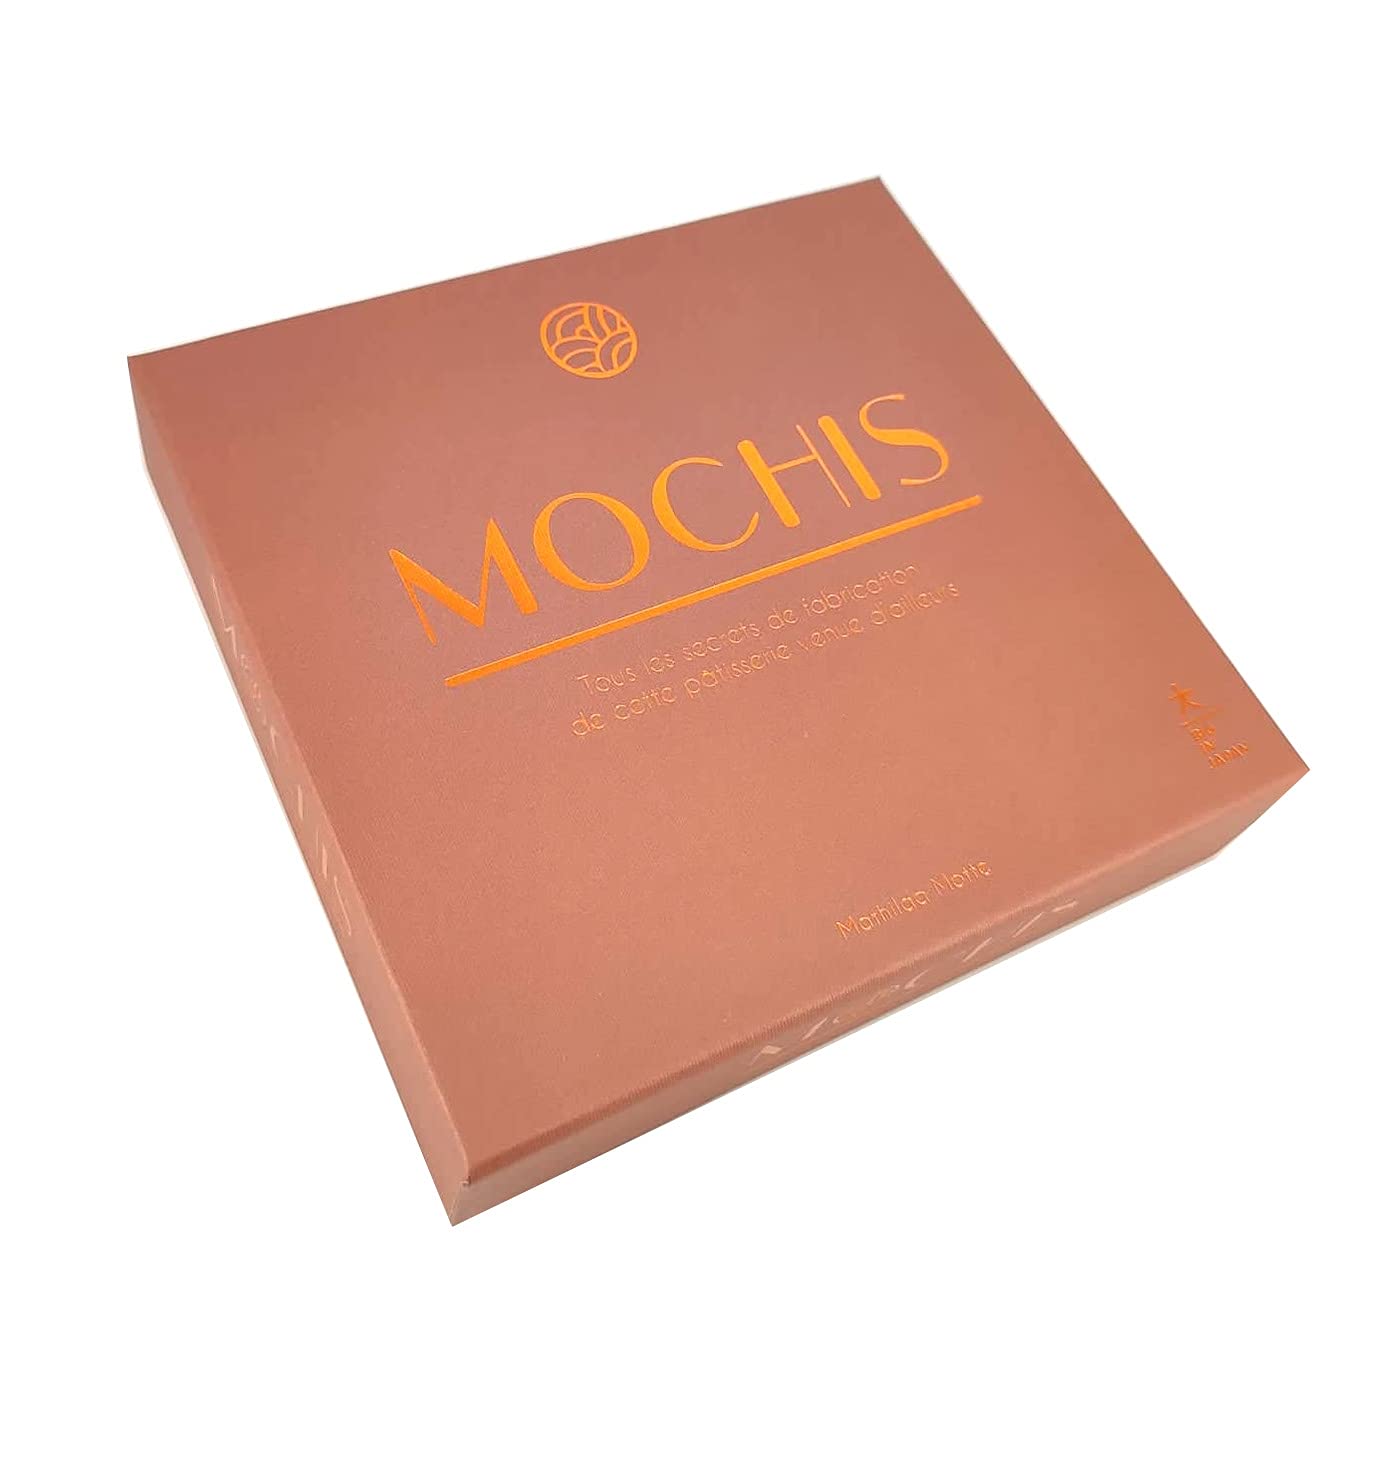 Mochis: Tous Les Secrets de Fabrication de Cette Patisserie Venue D'Ailleurs (Mathilda Motte)